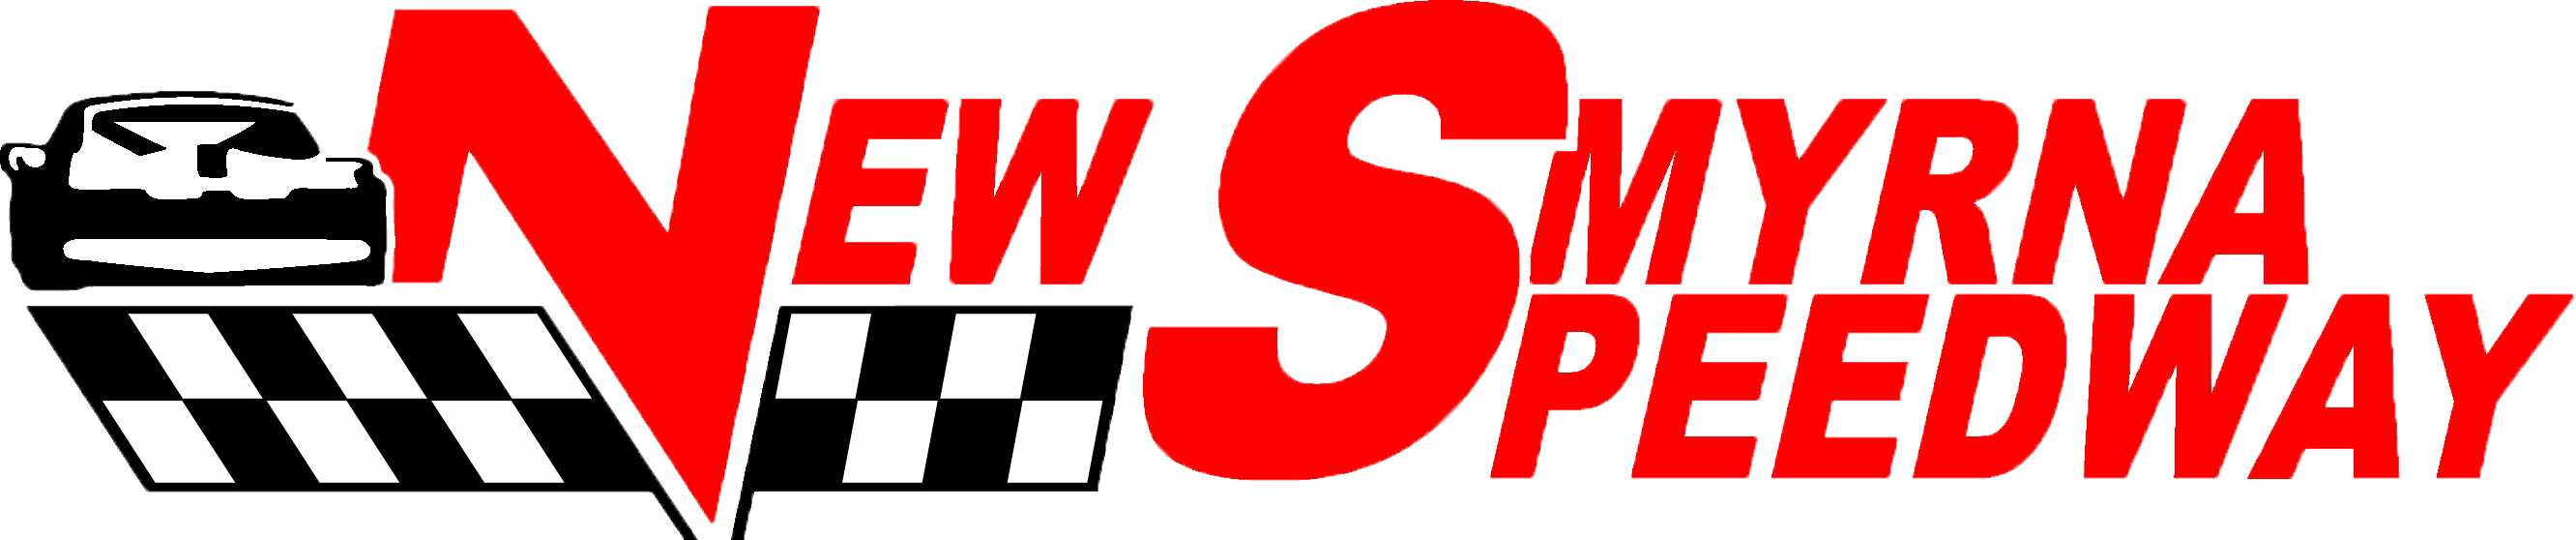 new-smyrna-speedway-logo